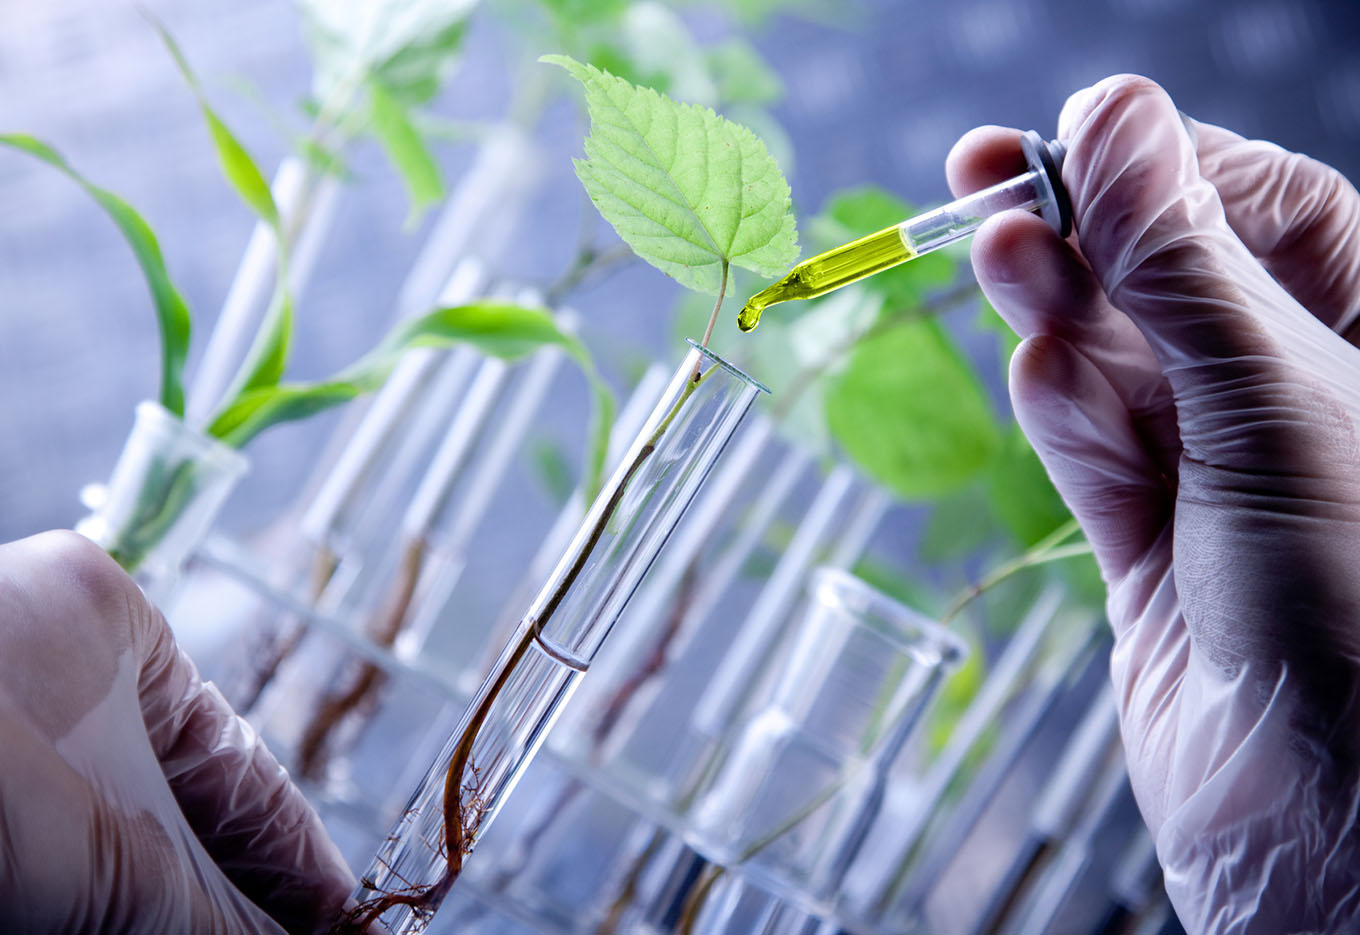 Ferramentas biotecnológicas de última geração podem contribuir para obtenção de plantas mais adaptadas a mudanças climáticas